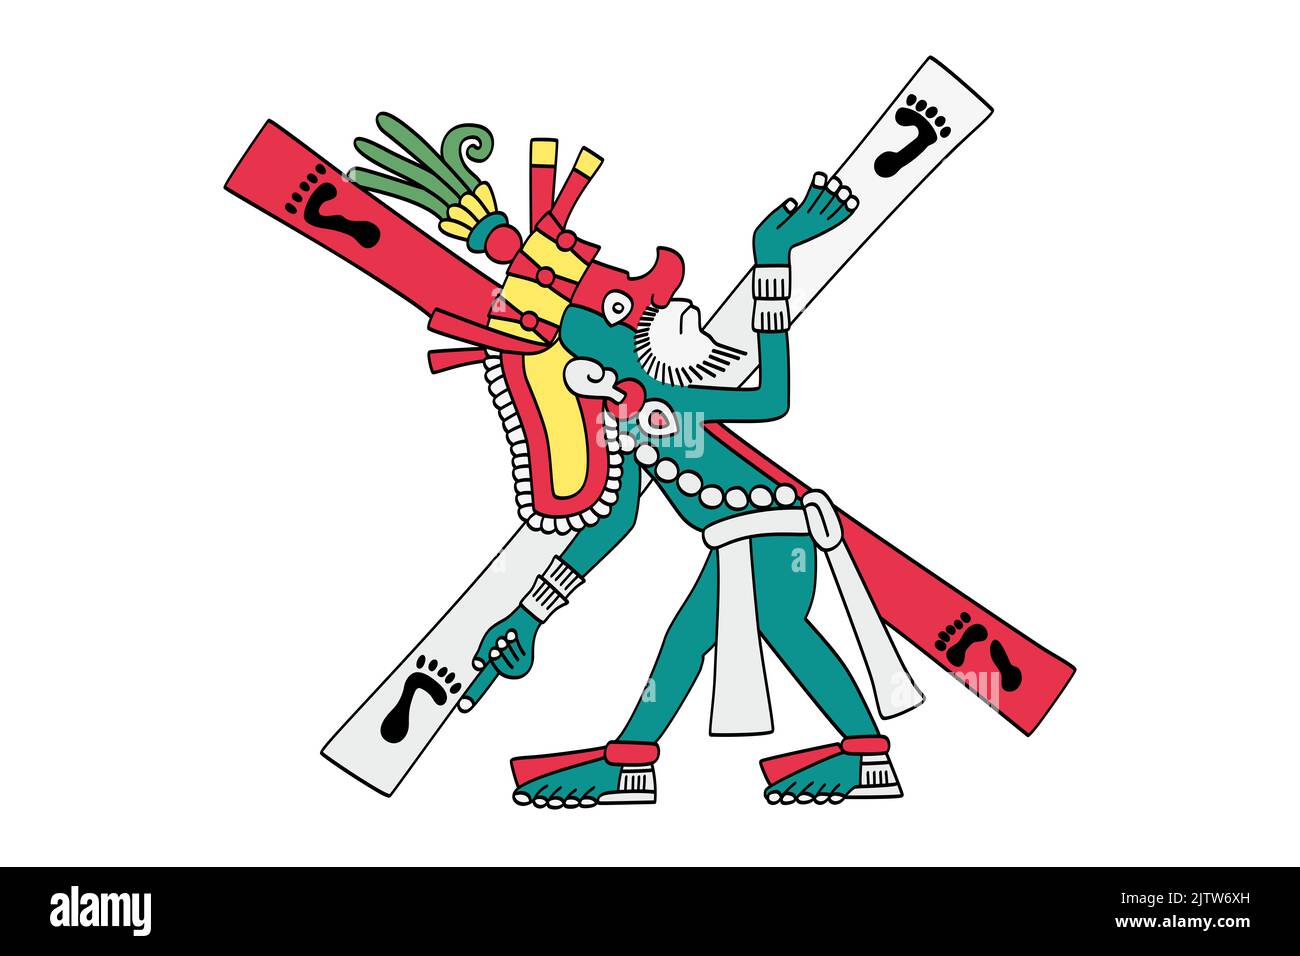 Xolotl an einer Kreuzung. Aztekischer gott des Feuers, Blitzes, Monster, Unglück, Krankheit und Missbildungen. Verbunden mit himmlischem Feuer. Stockfoto